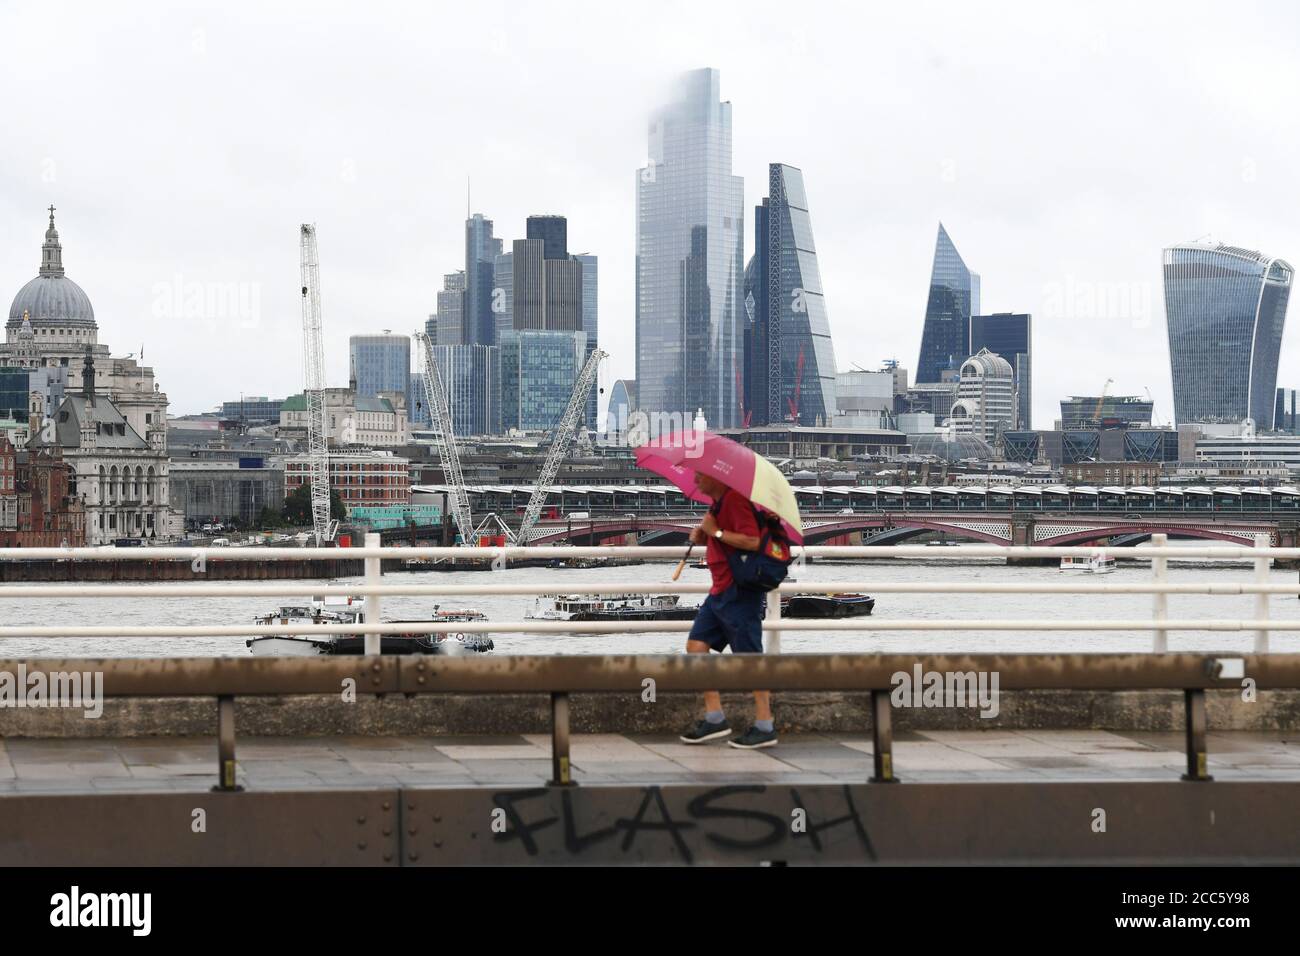 Un uomo cammina lungo Southbank a Londra, poiché molte parti del Regno Unito sperimentano il tempo umido prima dell'arrivo di Storm Ellen, che si prevede porterà venti forti. Foto Stock